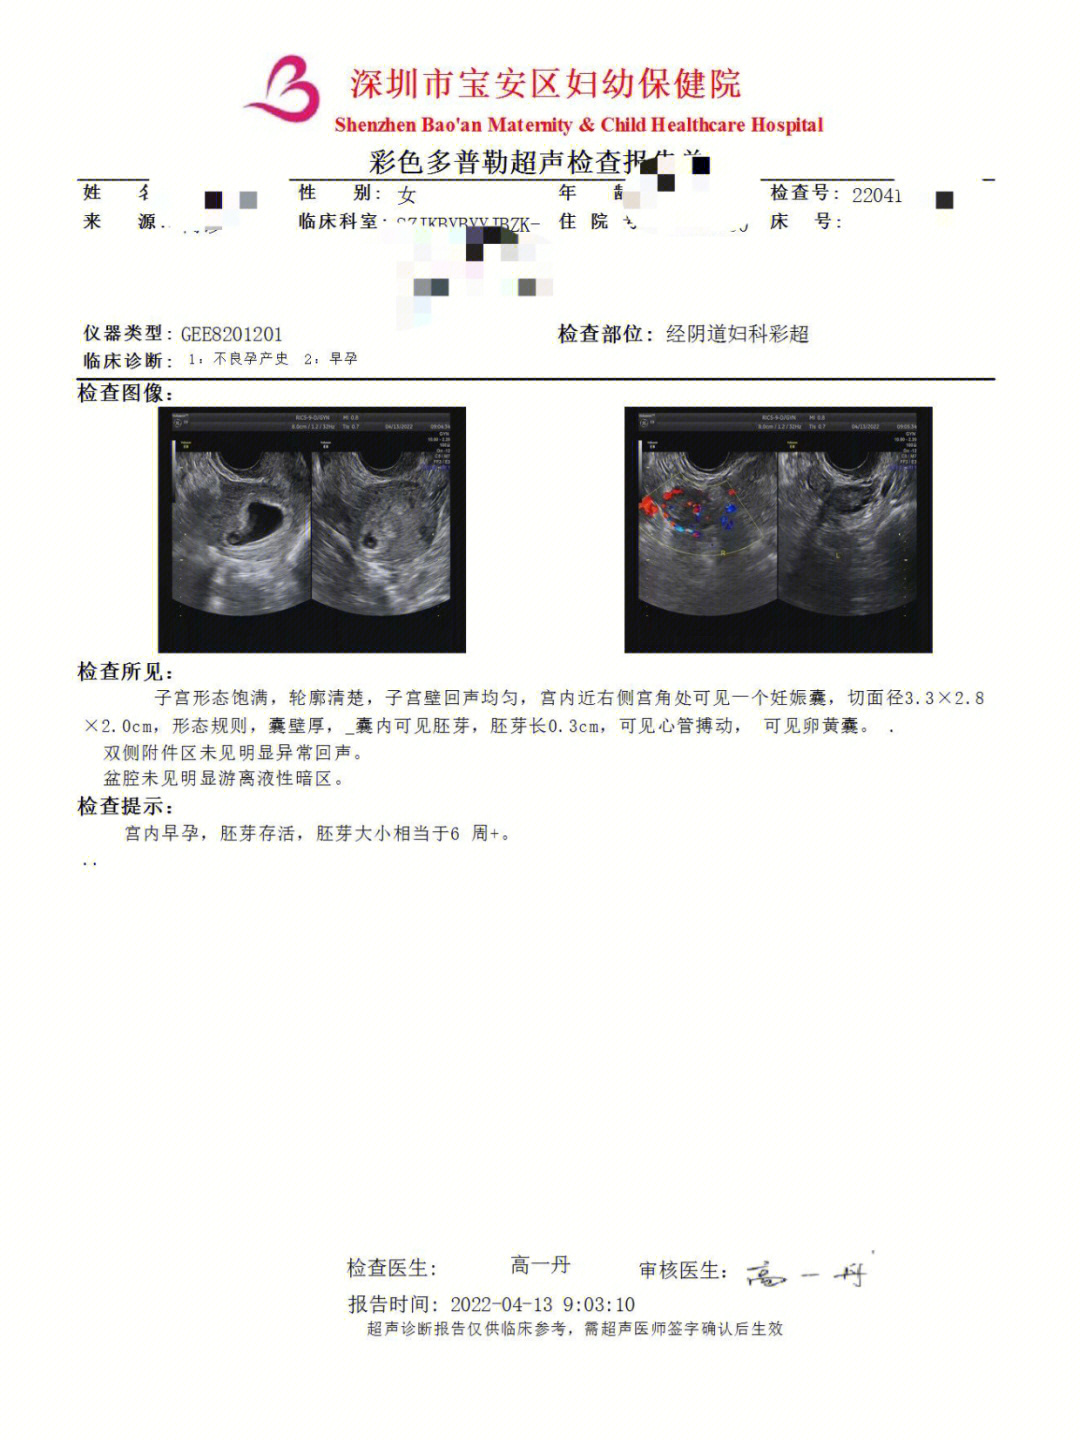 宫角妊娠分型图片图片